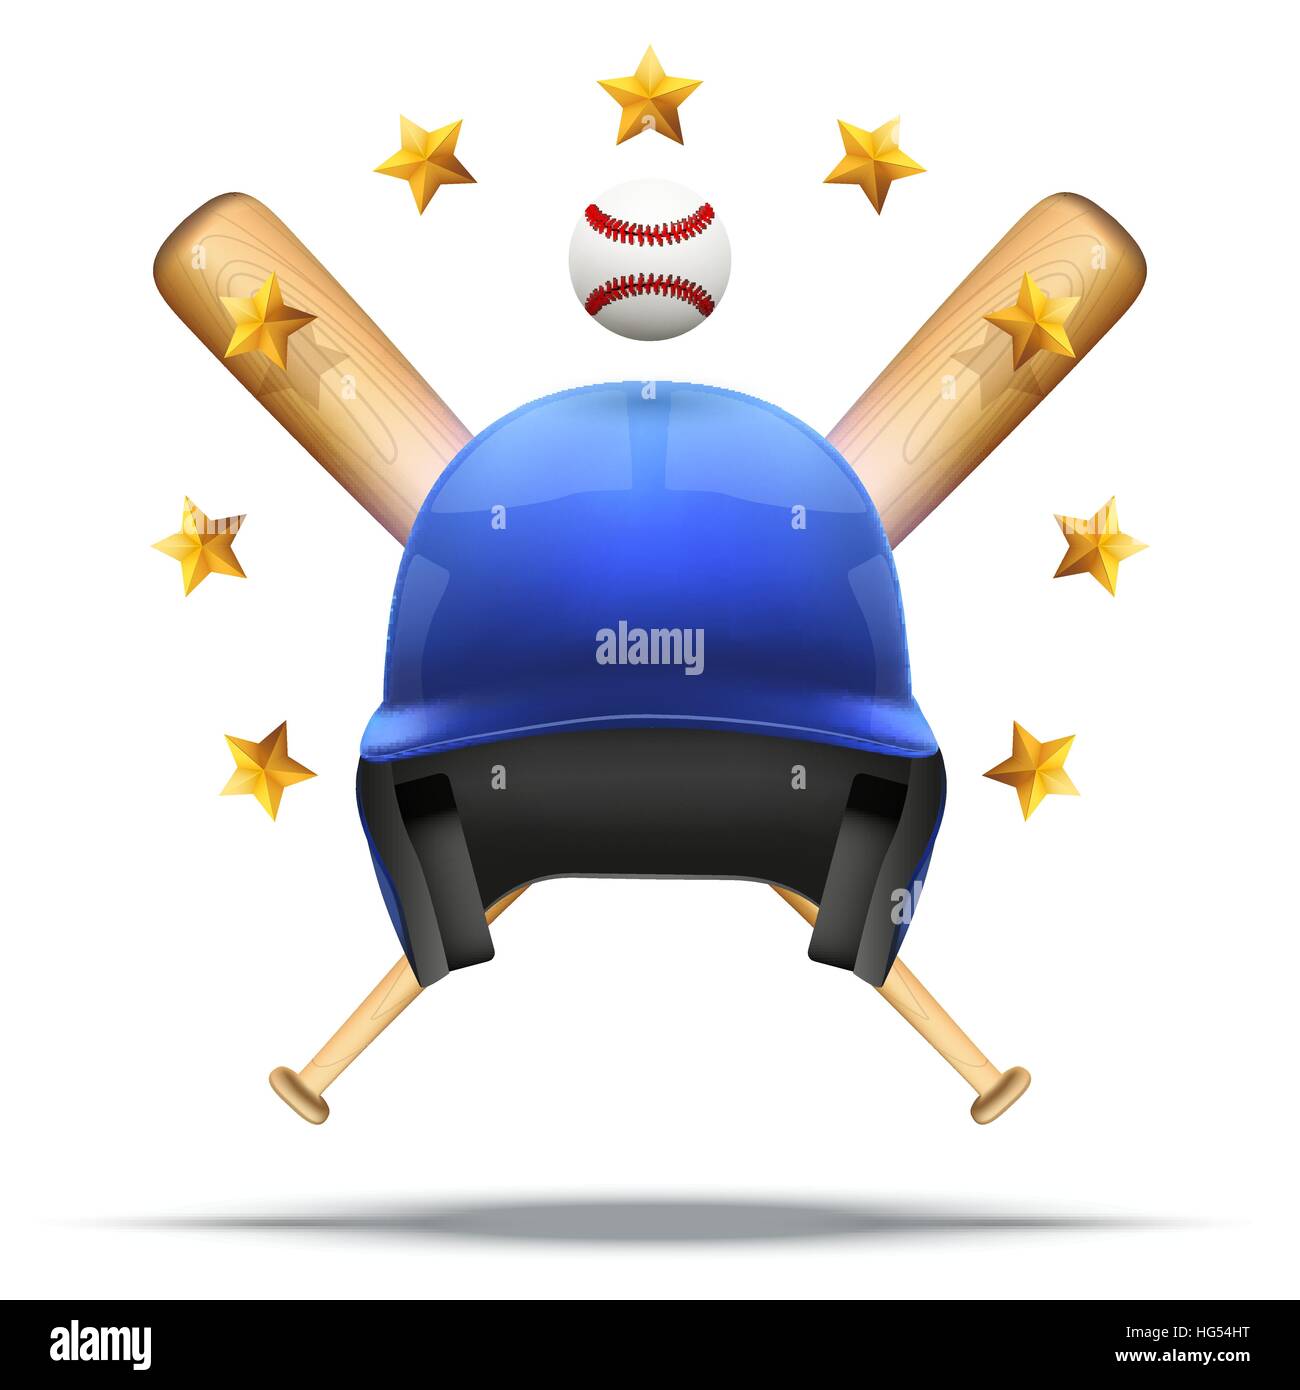 Baseball and Softball symbol Stock Vector